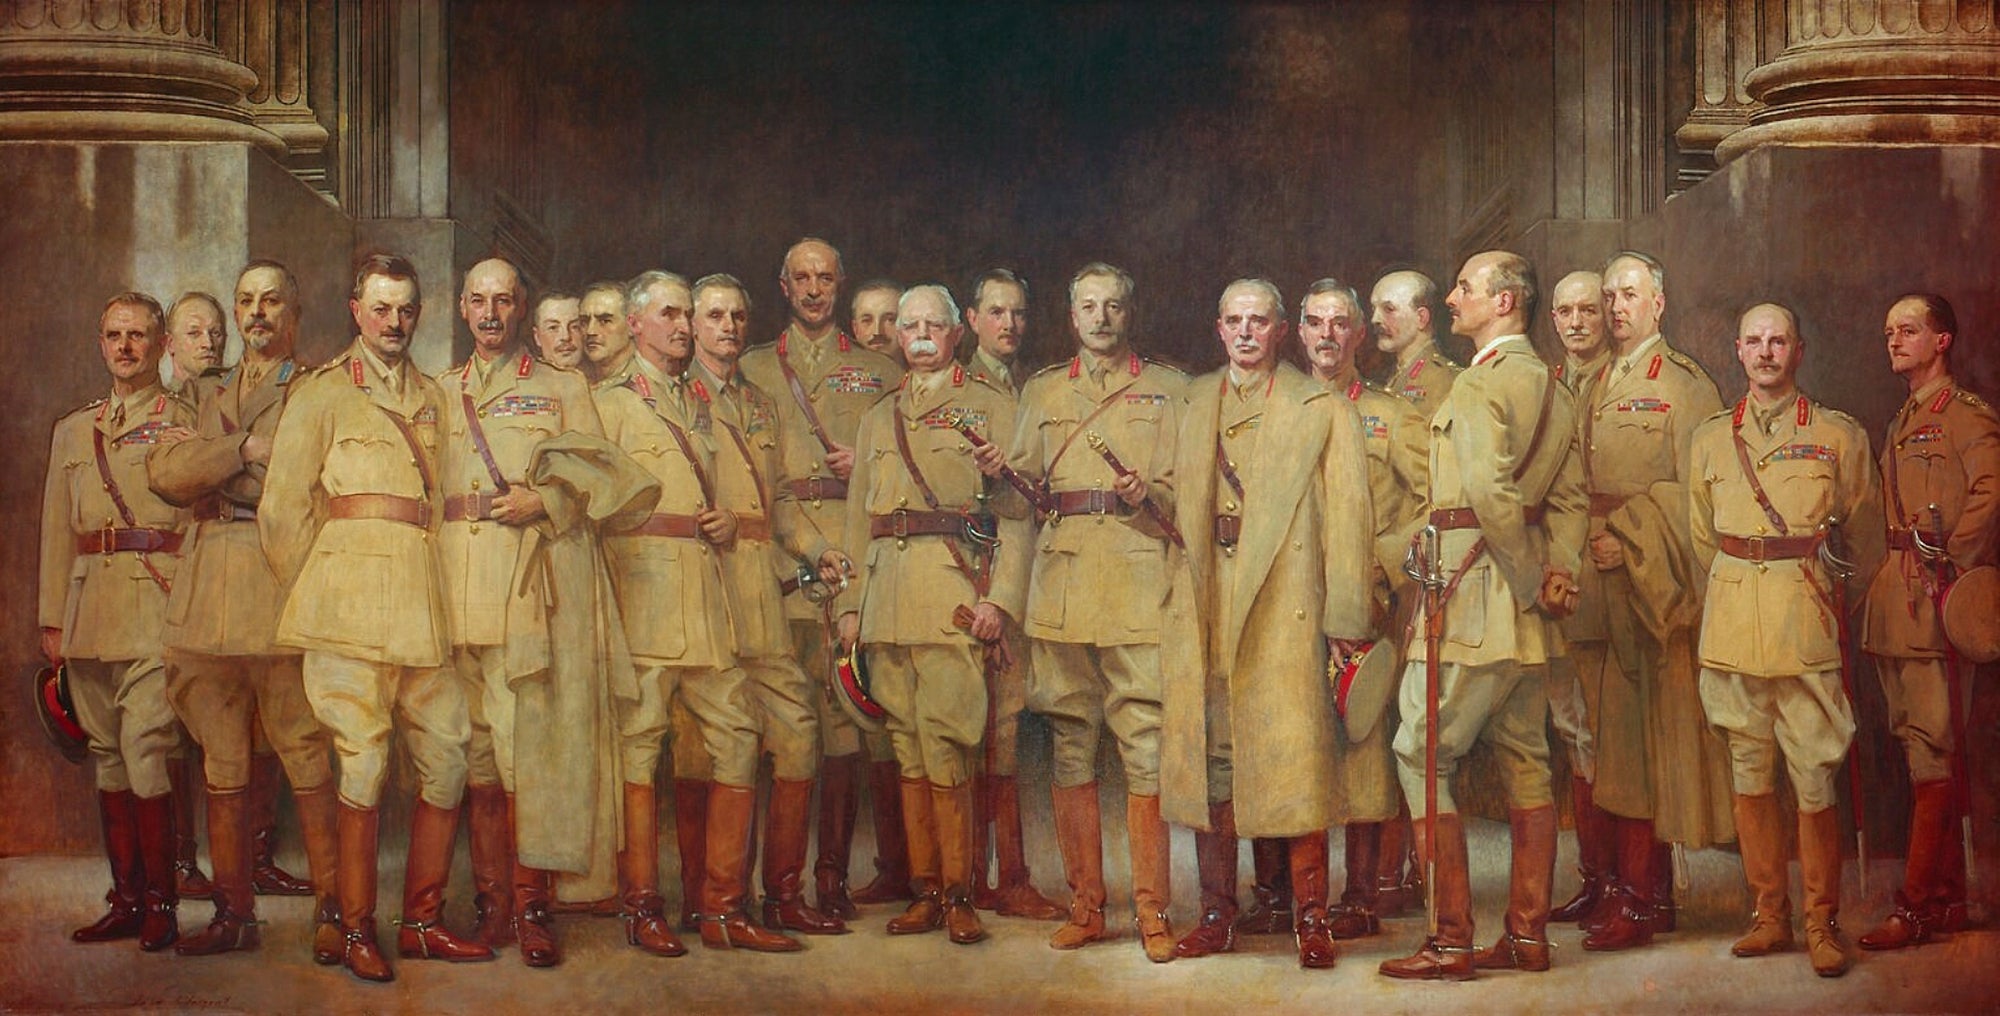 Officiers généraux de la Première Guerre mondiale - John Singer Sargent